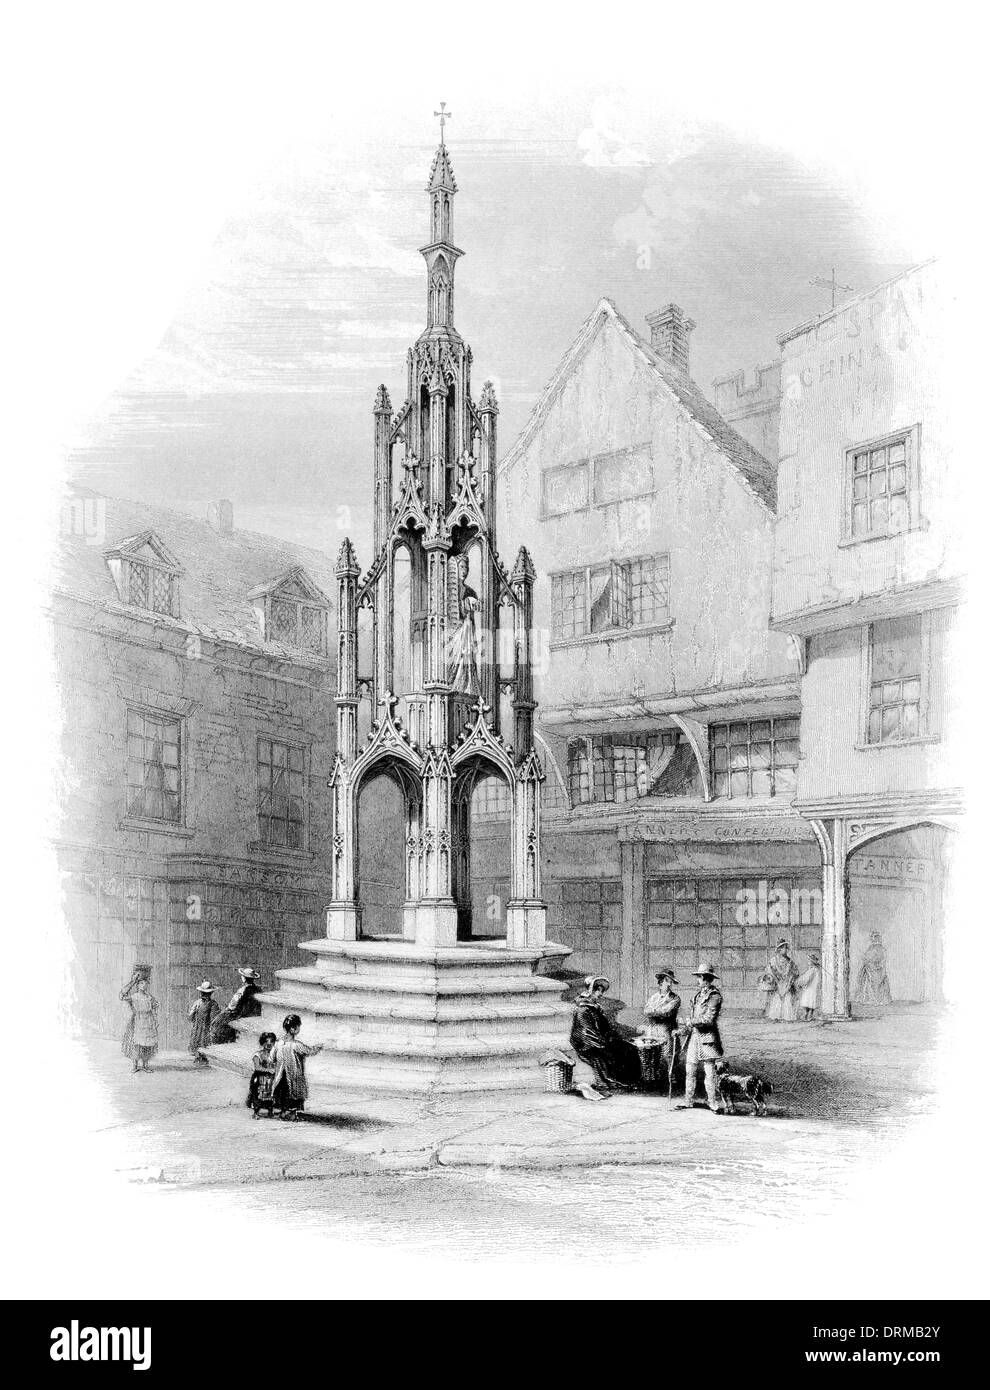 Market Cross Buttercross High street Winchester ville du comté de Hampshire, au sud de l'Angleterre vers 1850 Banque D'Images